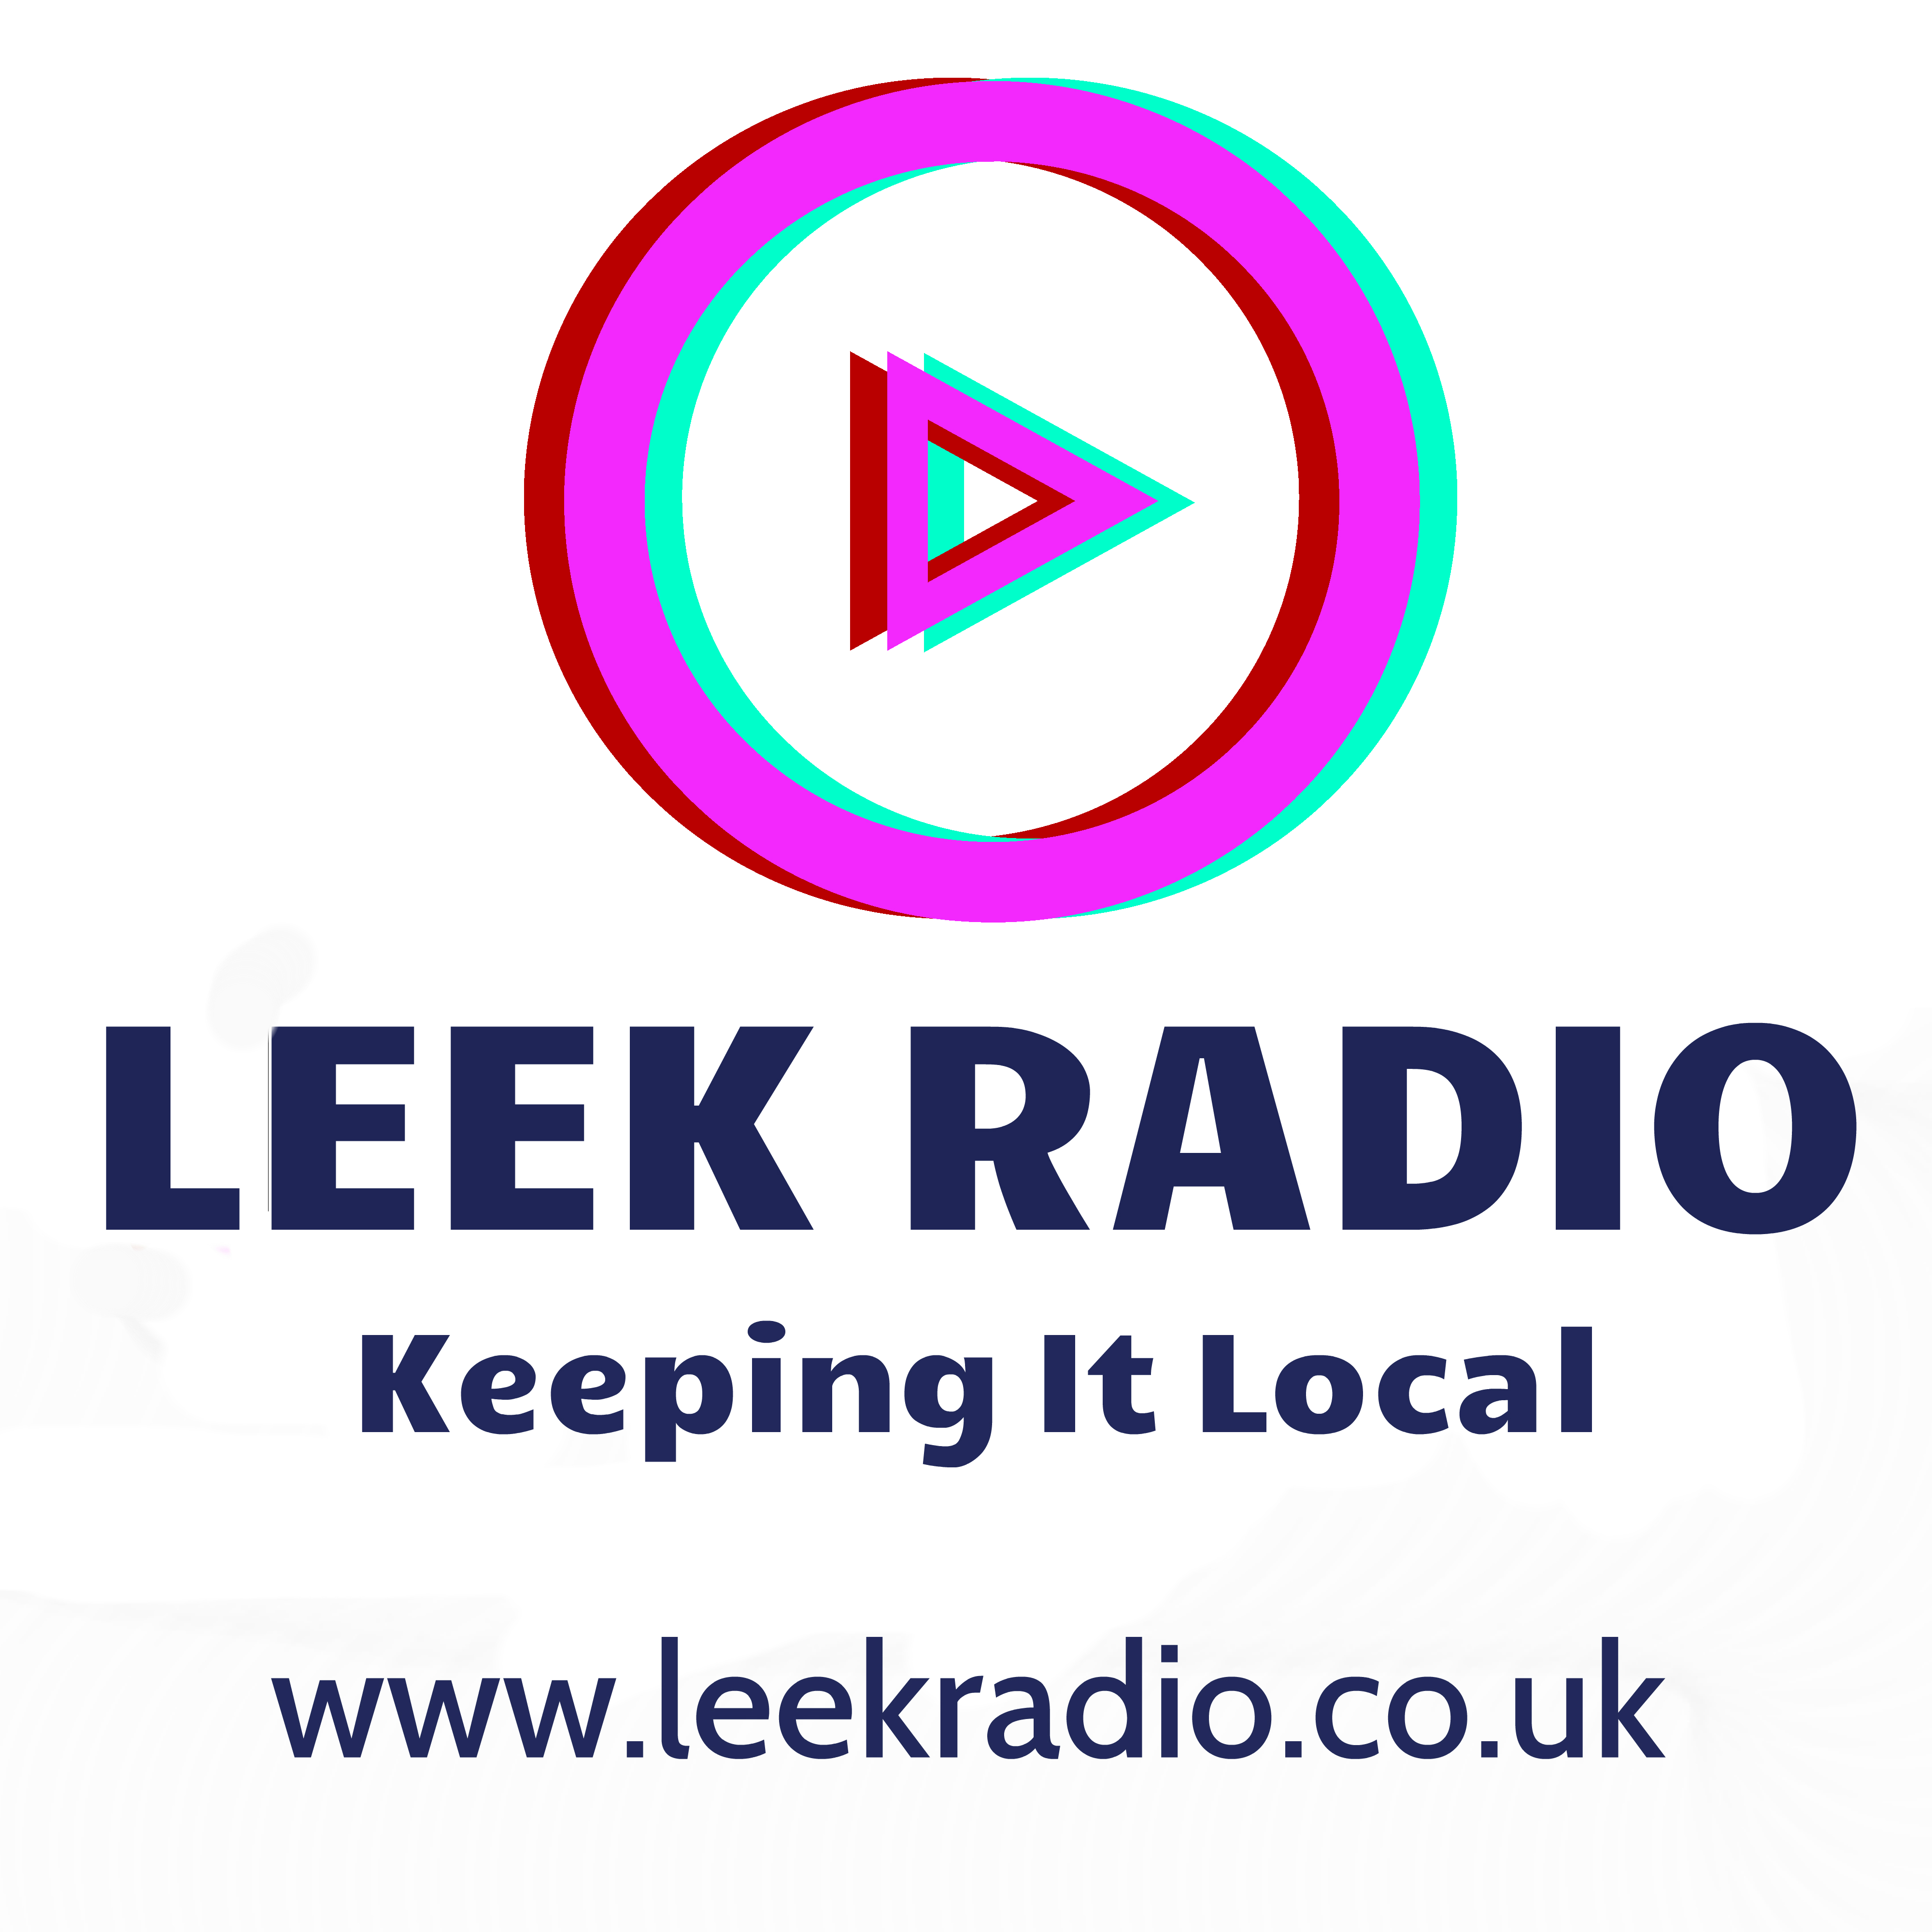 Leek Radio